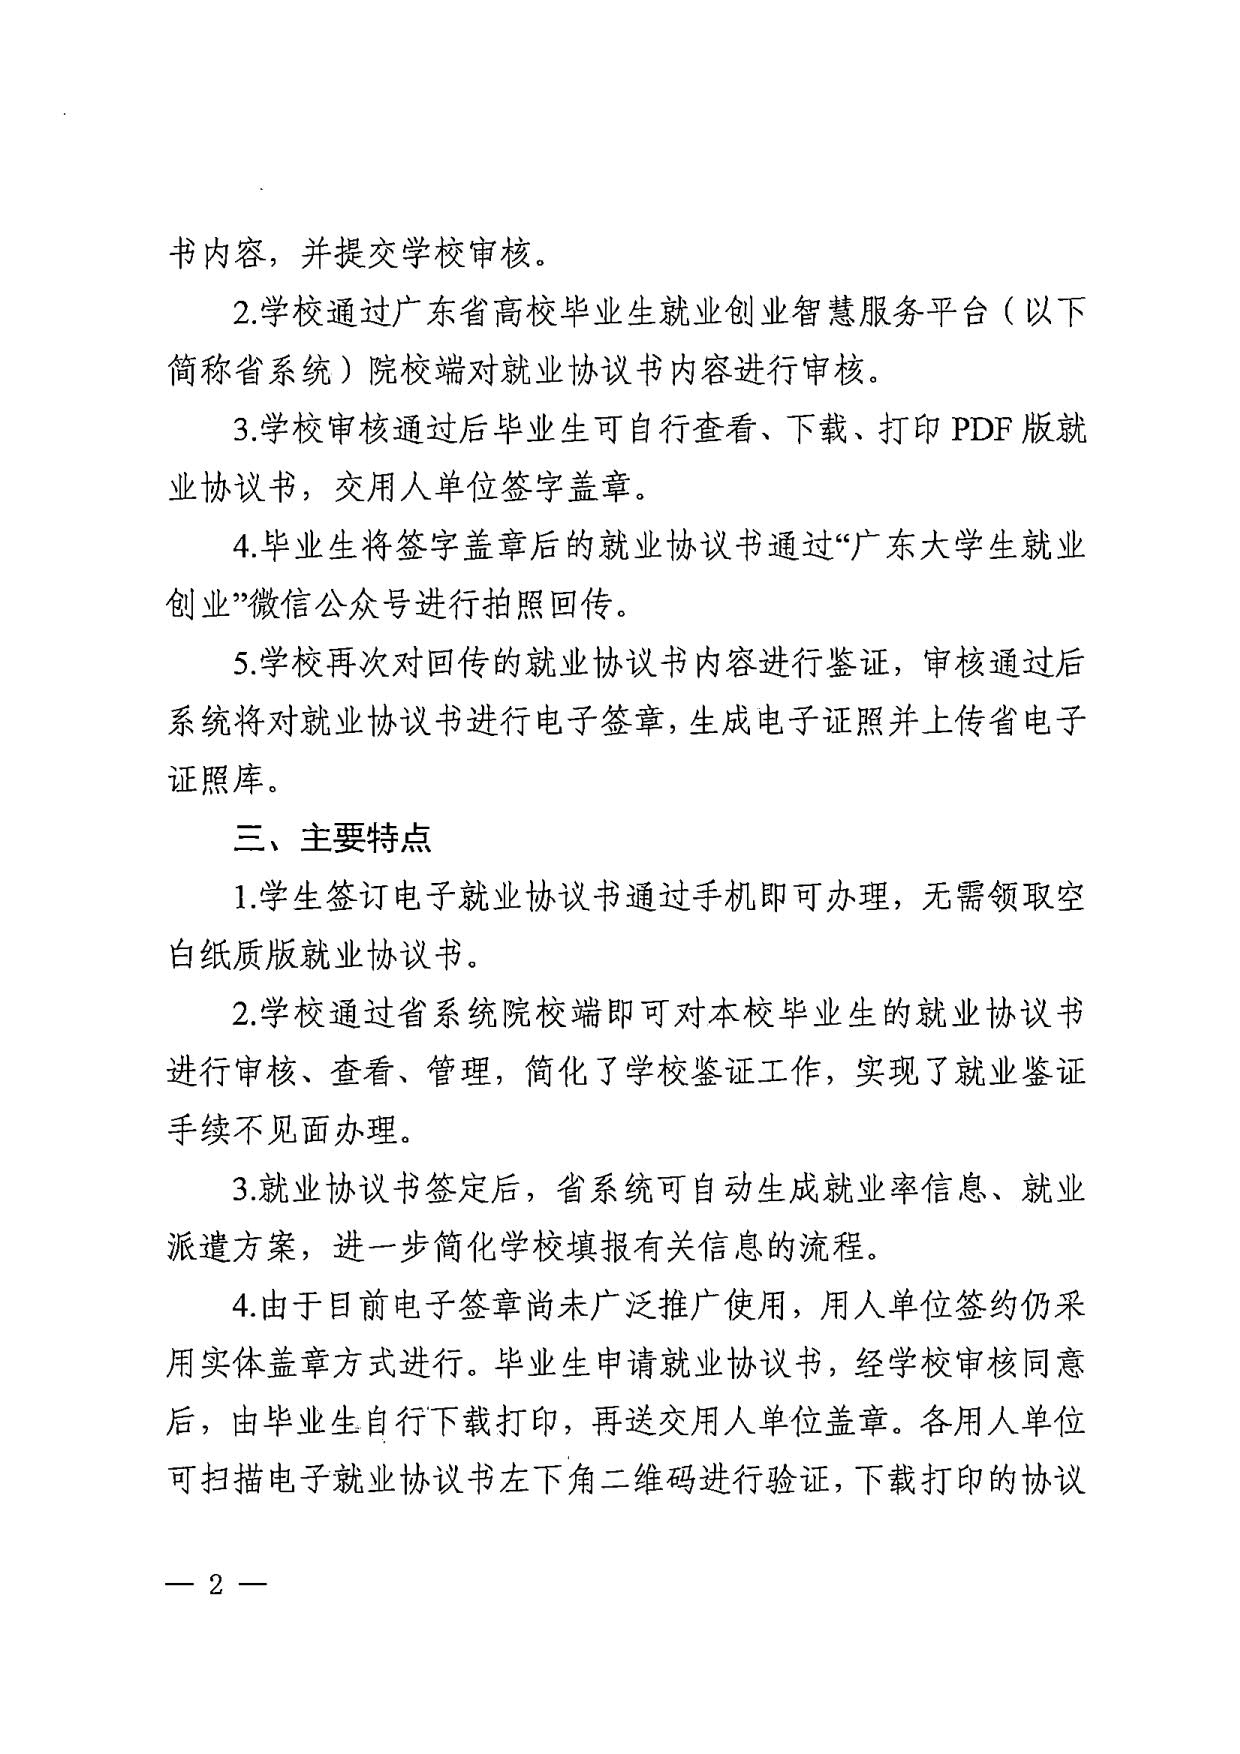 广东省教育厅办公室关于推广使用电子就业协议书的通知_2.jpg